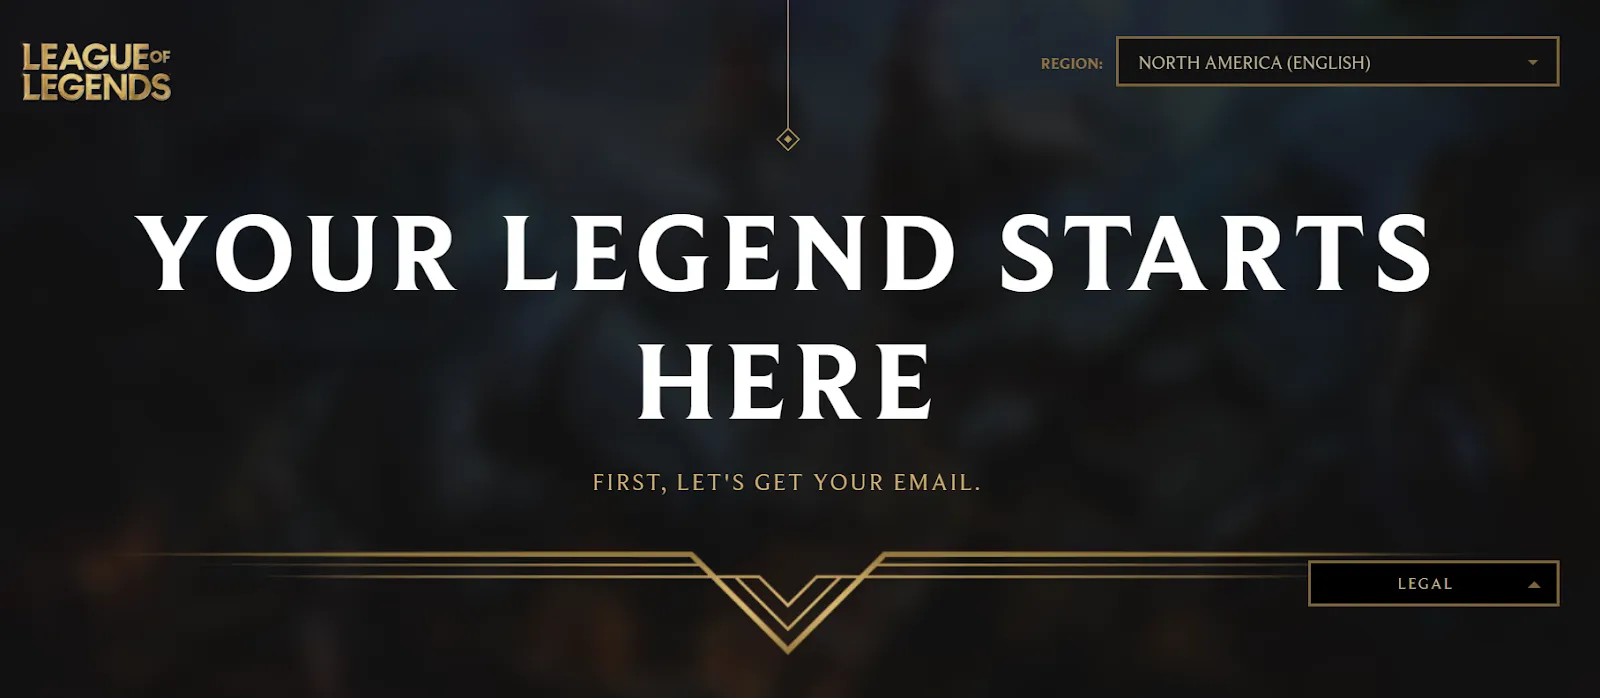 League of legends register page